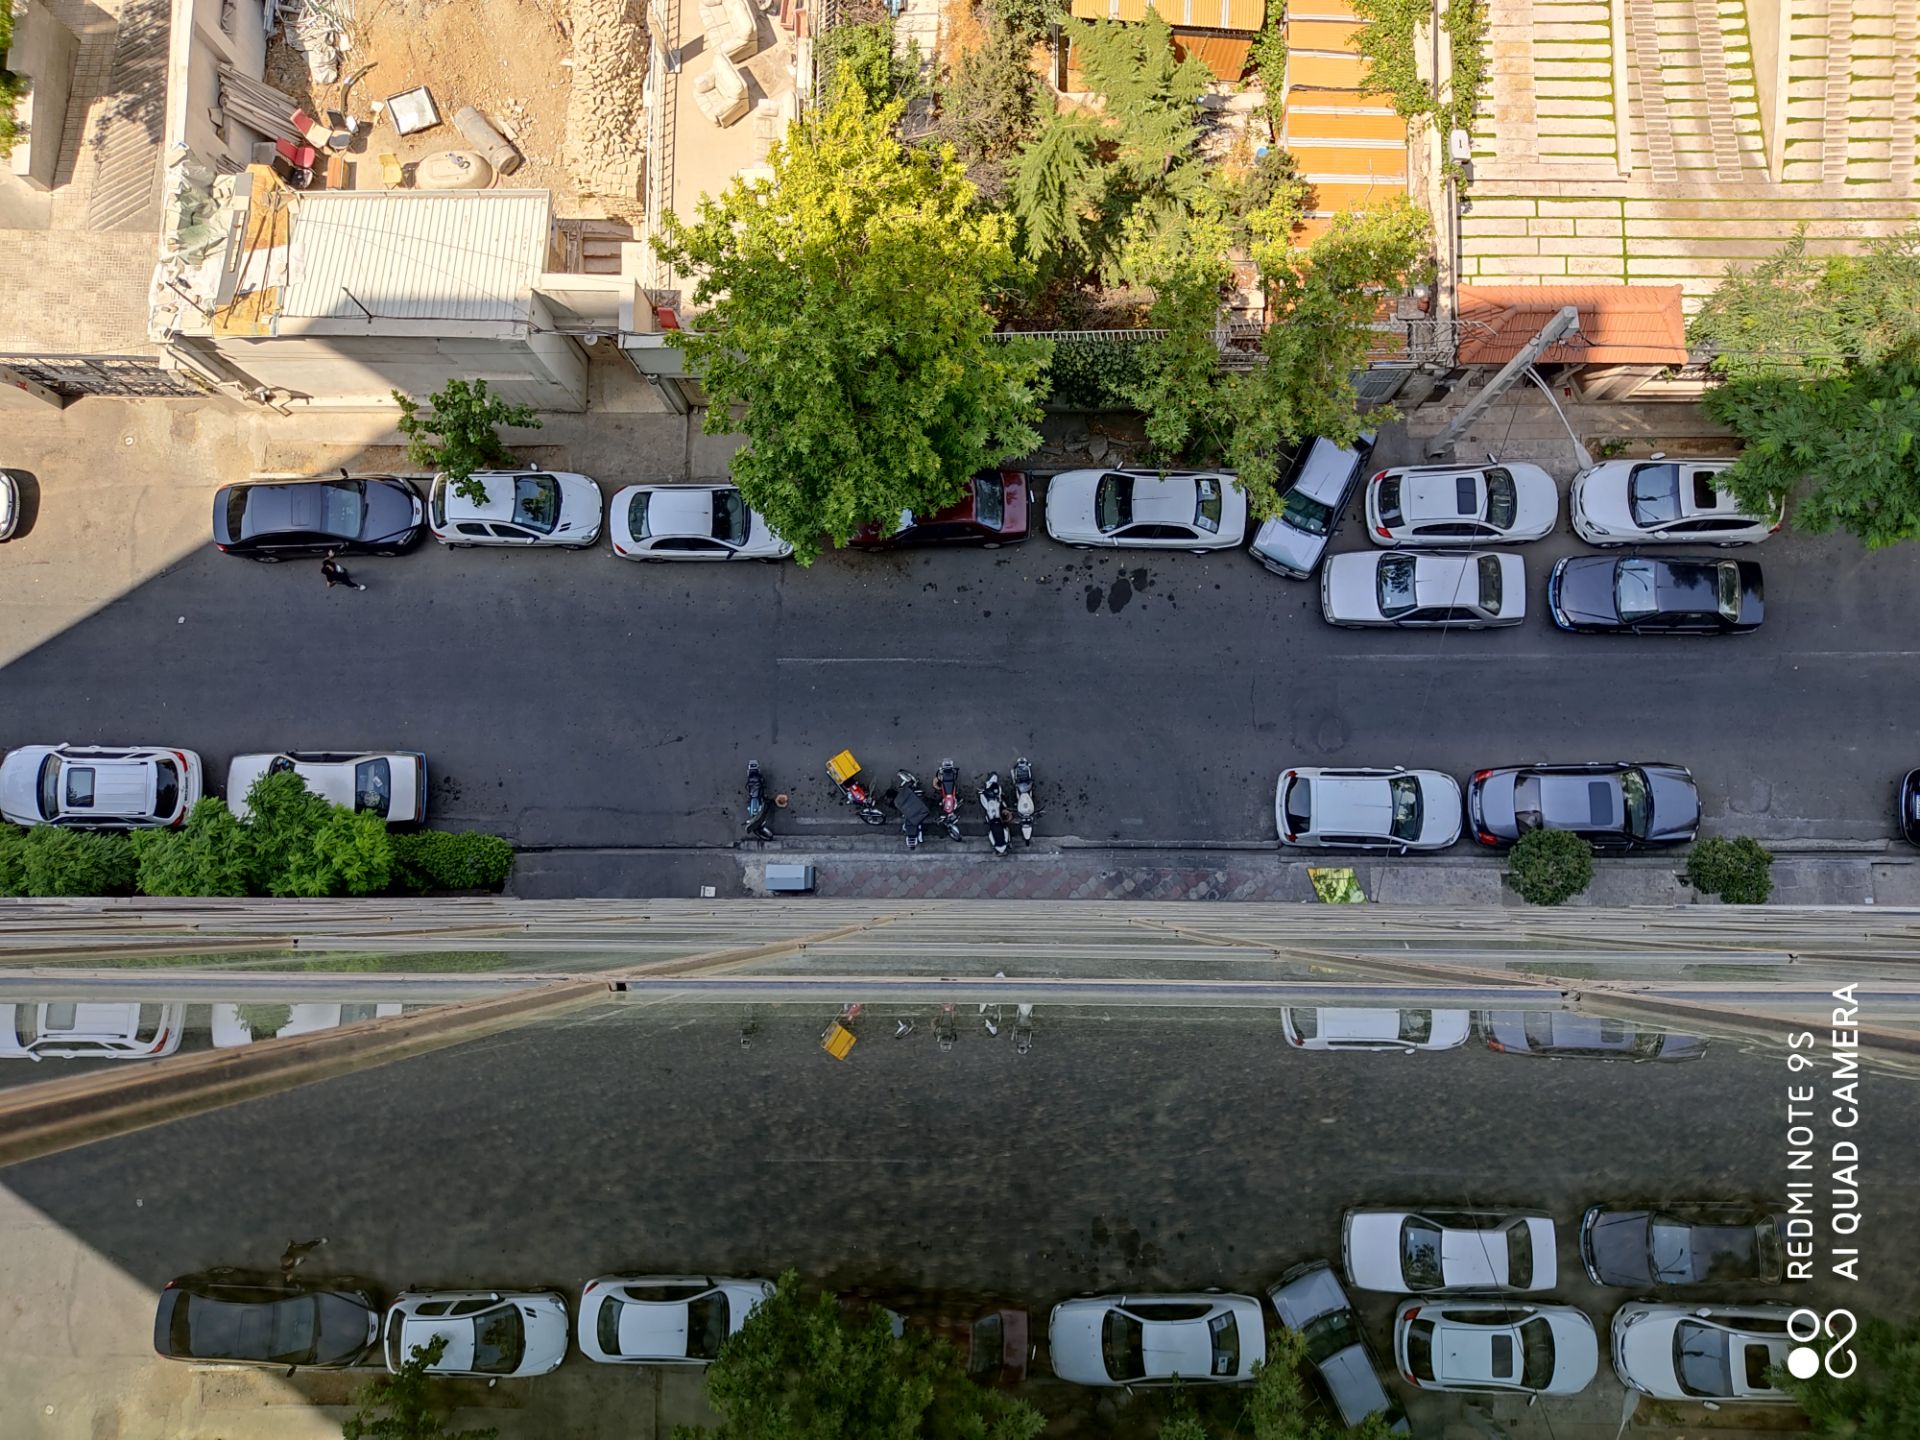 نمونه عکس ردمی نوت 9 اس - نمای بالا از خودروها در خیابان